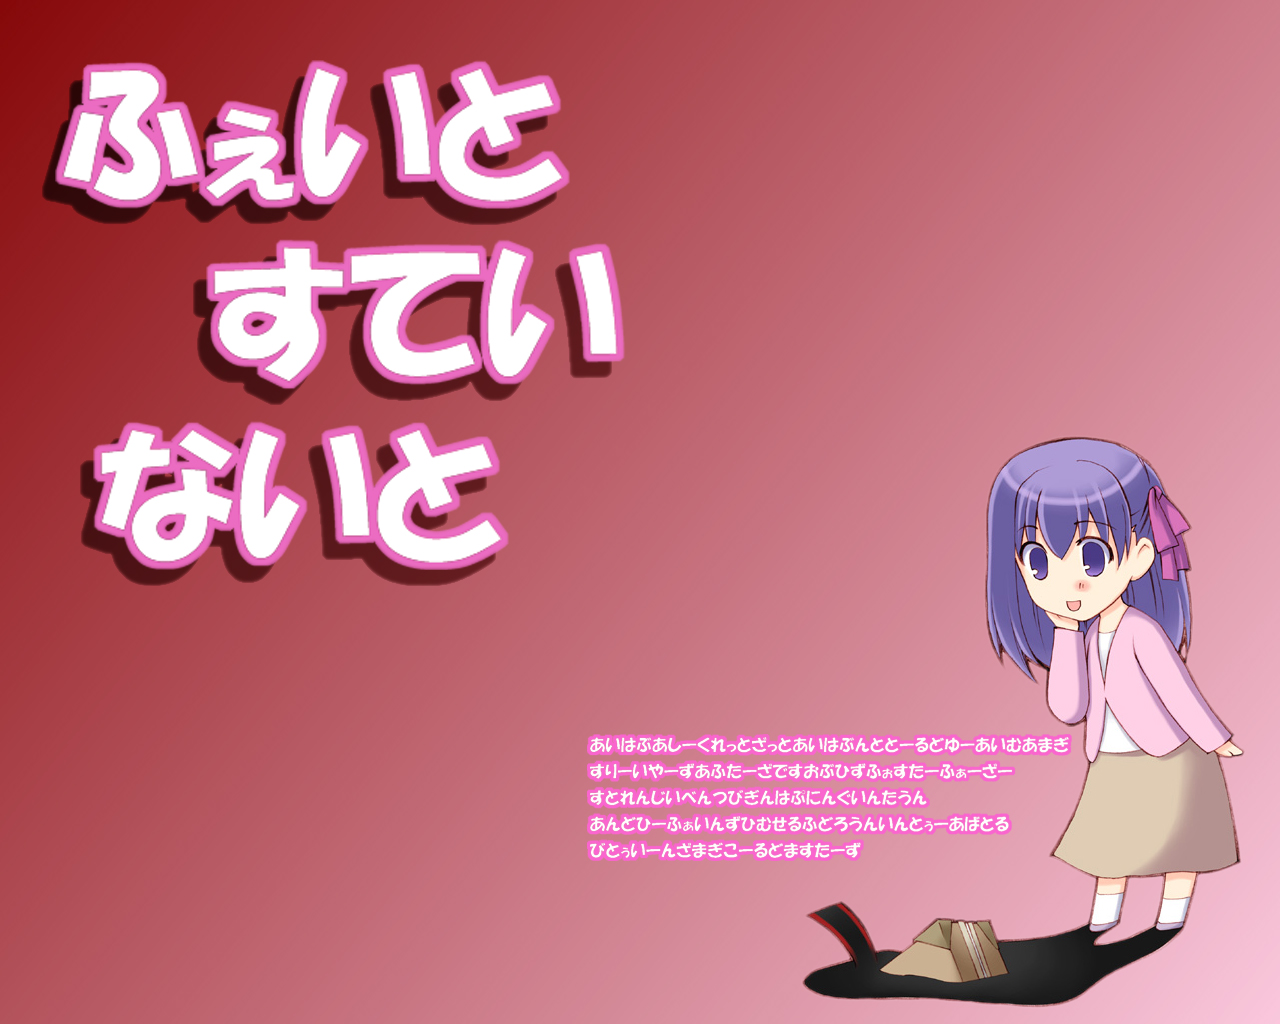 Descarga gratuita de fondo de pantalla para móvil de Animado, Fate/stay Night, Sakura Matou.